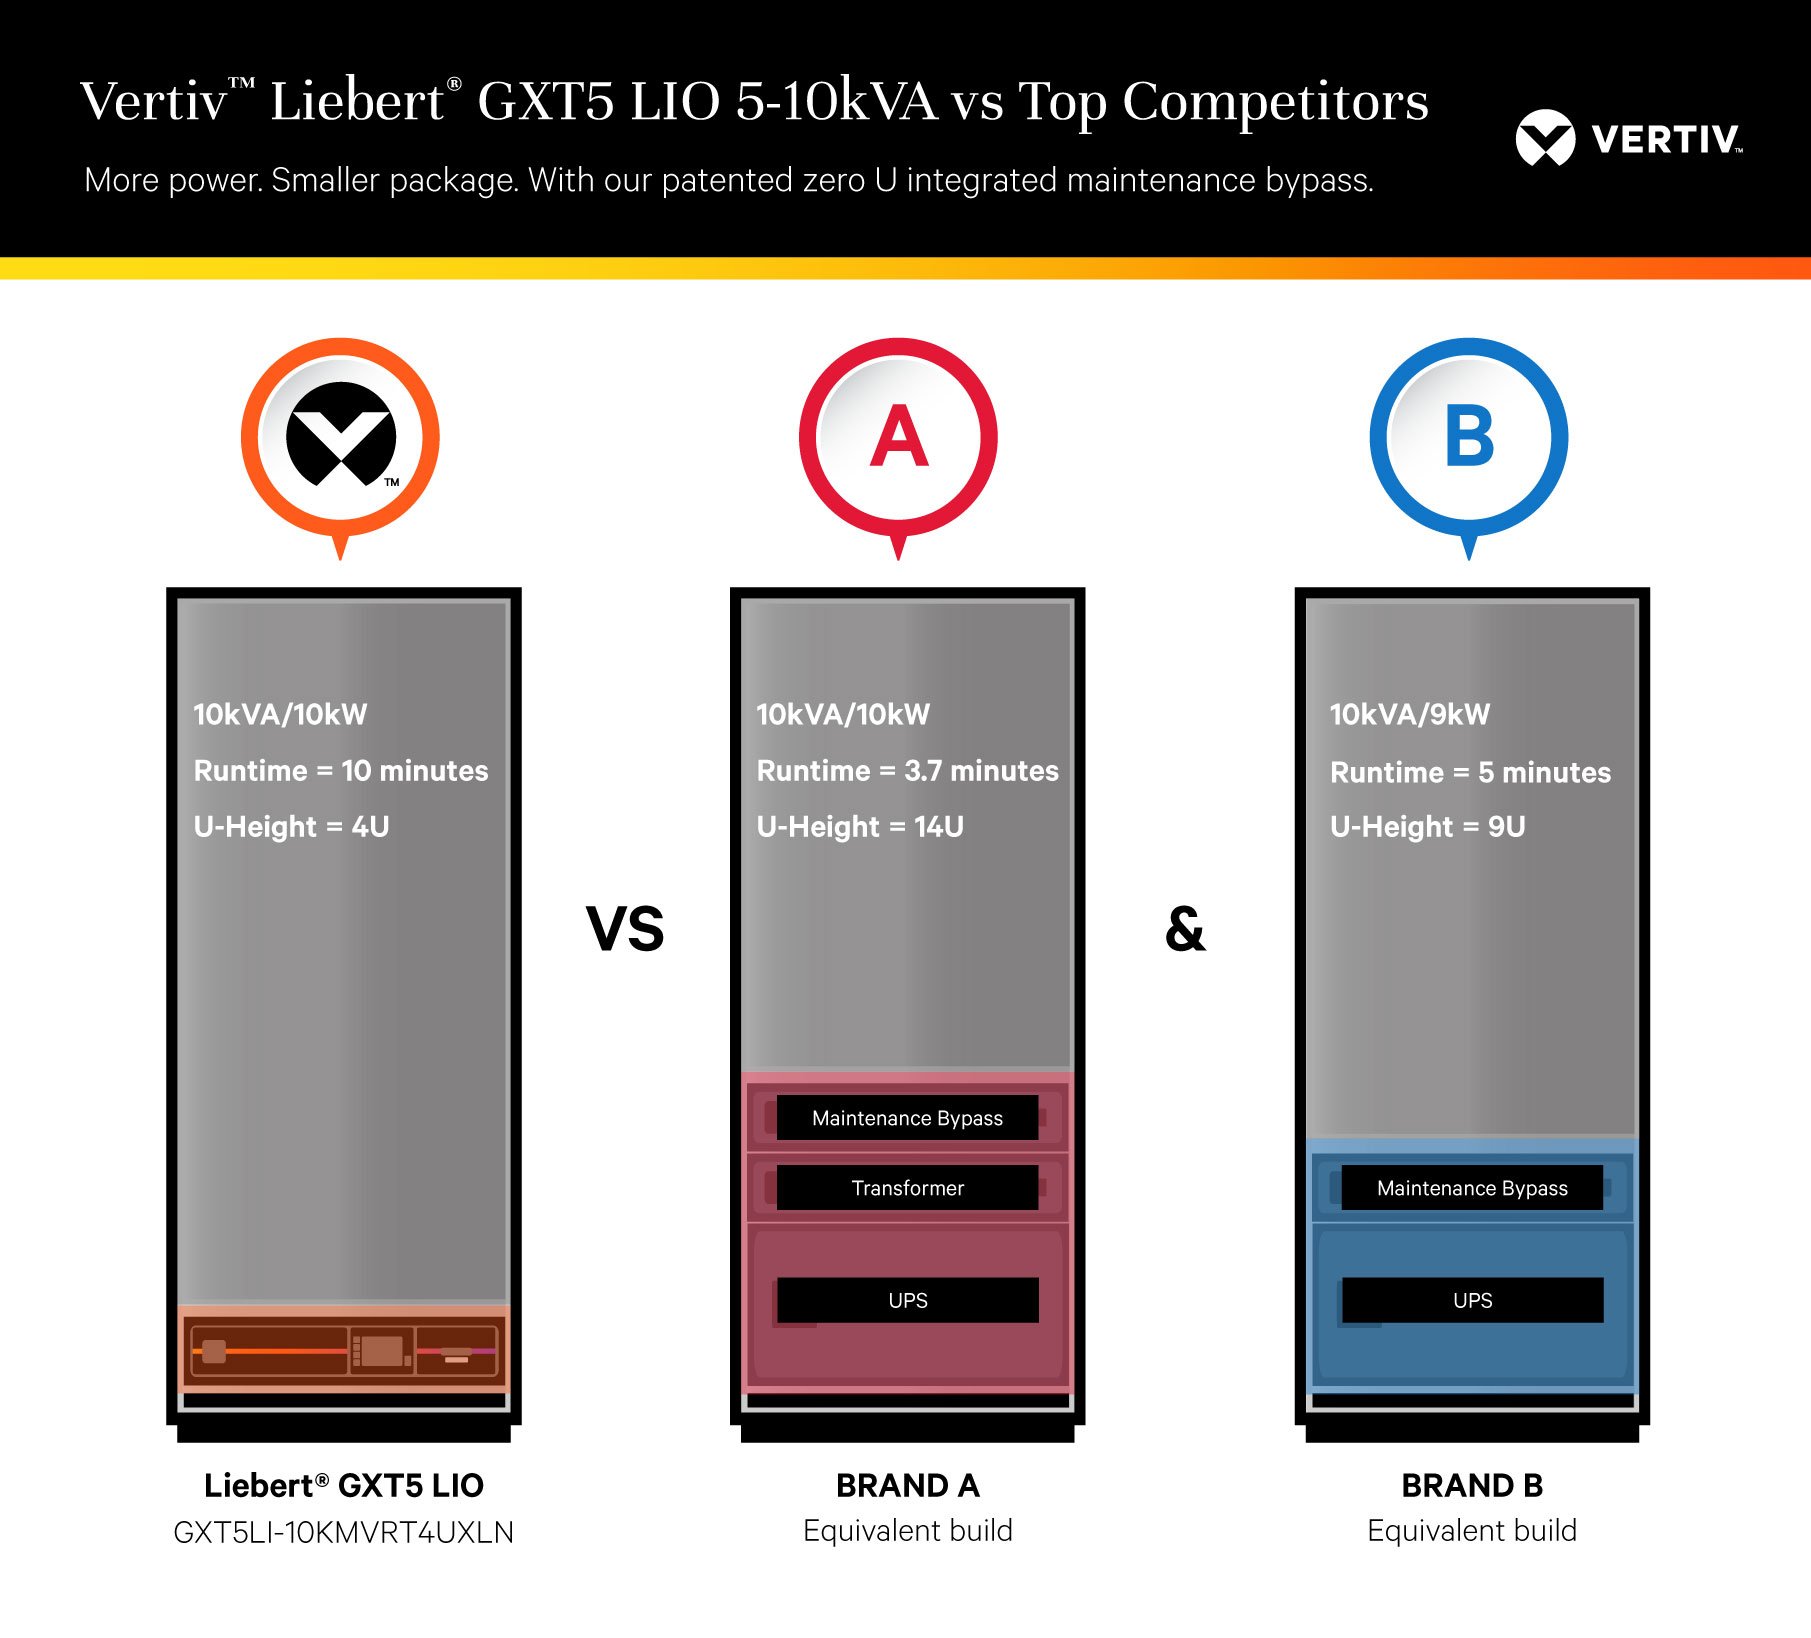 vertiv-liebertgxt5lio-5-10kva-vs-topcompetitors-graphic-en-na-368257-web_368258_0.png